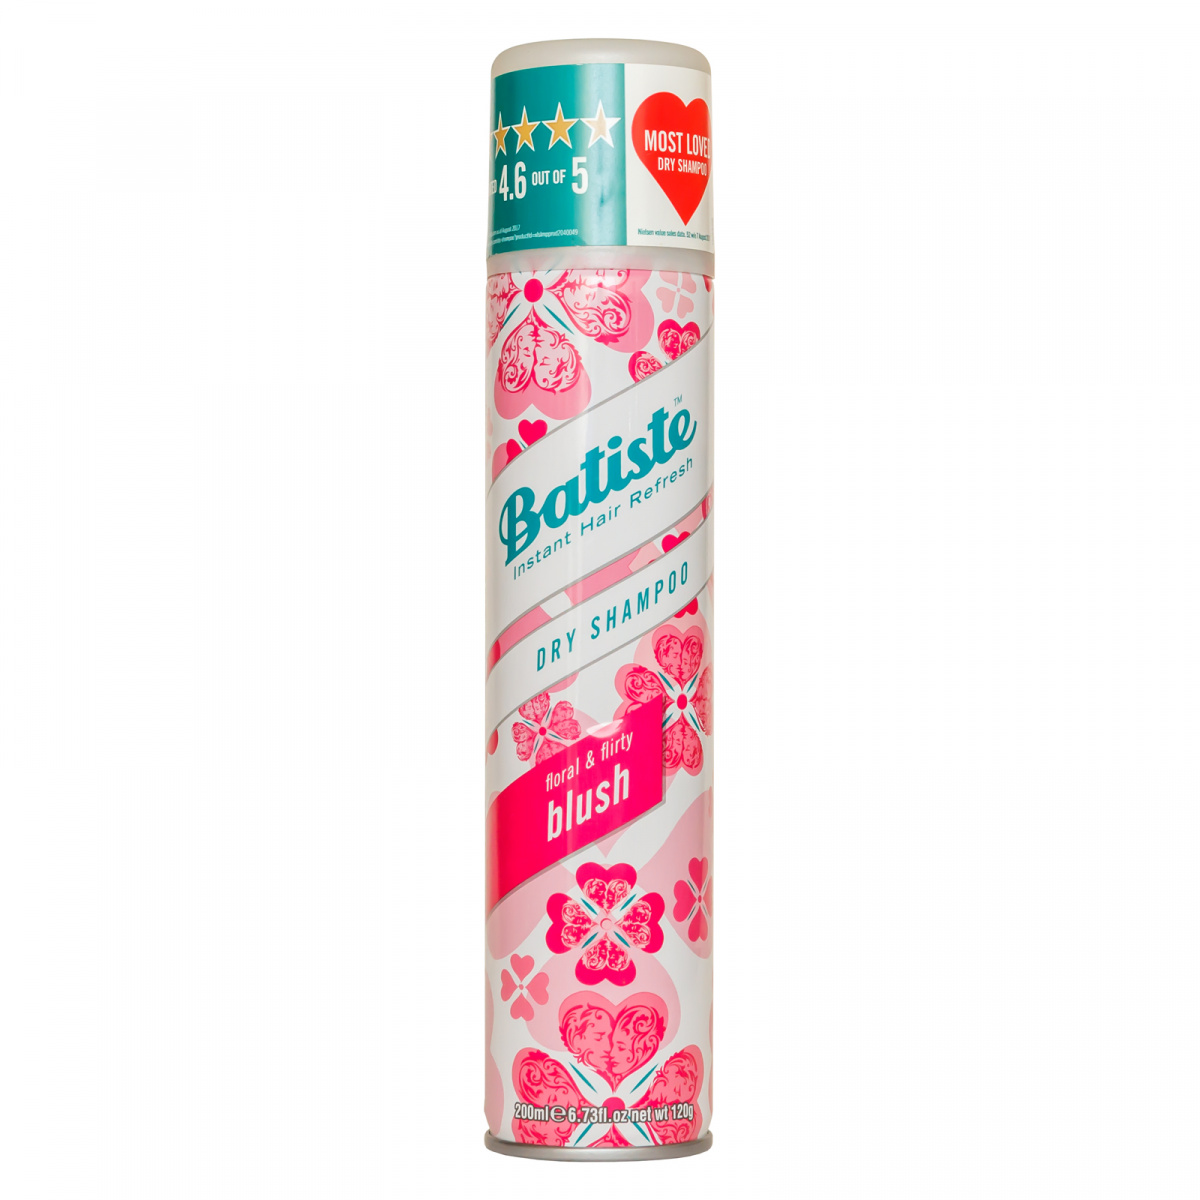 Batiste Dry Shampoo Blush - Сухой шампунь с цветочным ароматом 200 мл Batiste Dry Shampoo (Великобритания) купить по цене 638 руб.